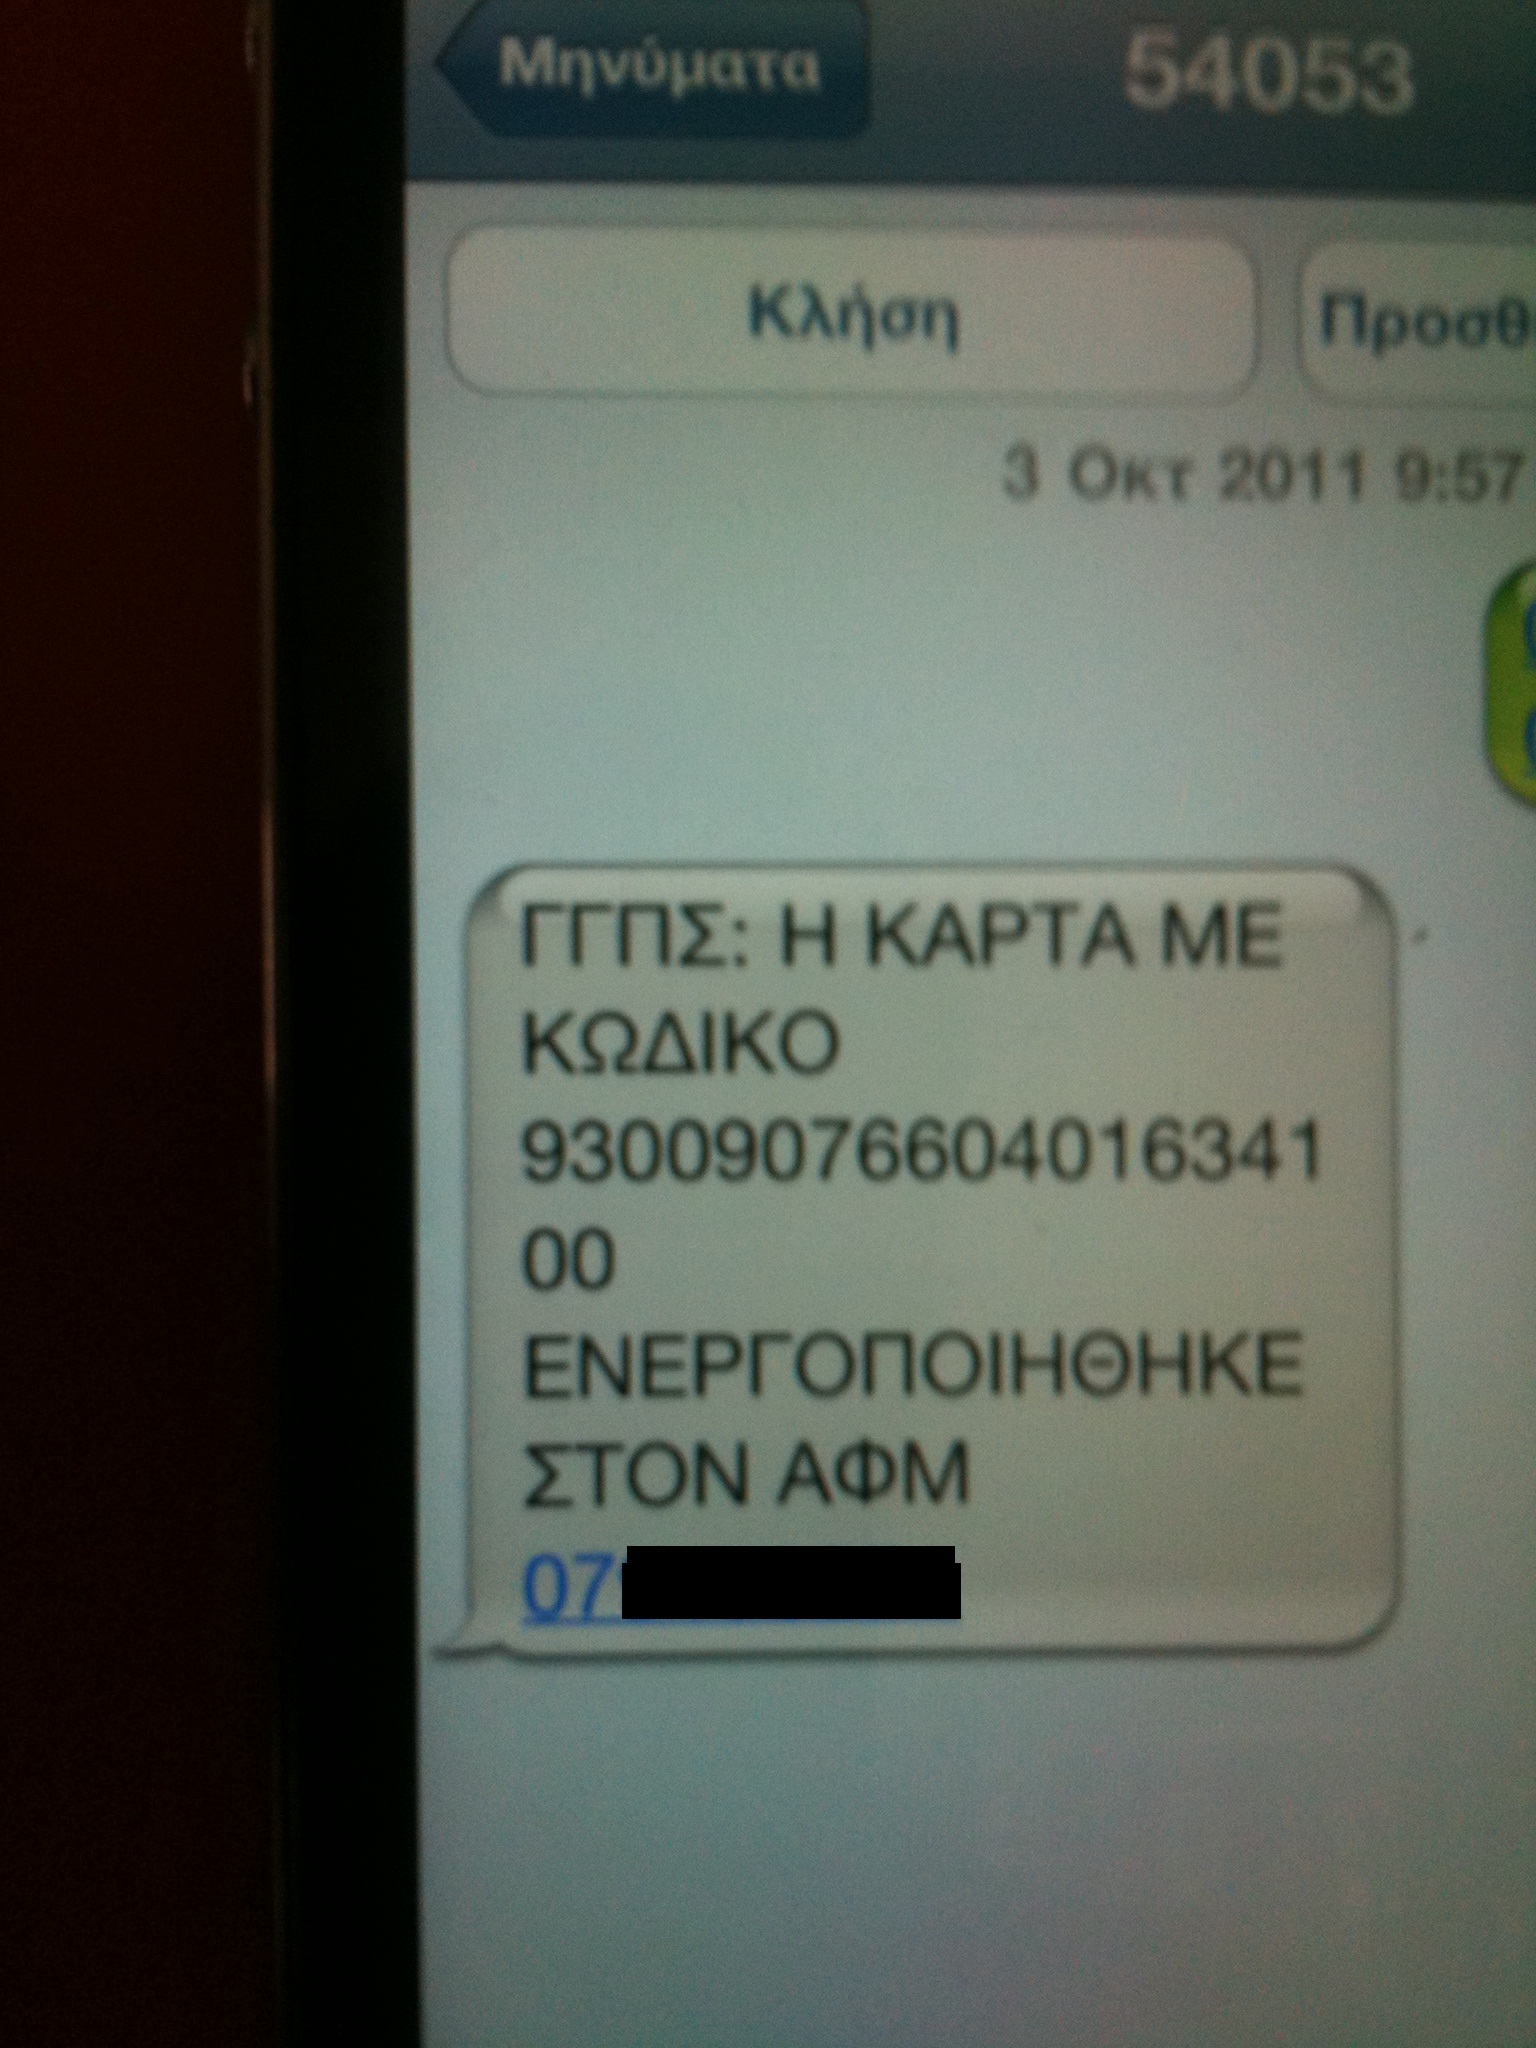 Αυτό είναι το SMS που θα λάβετε με το οποίο θα ενημερώνεστε για την ενεργοποίηση της φοροκάρτας